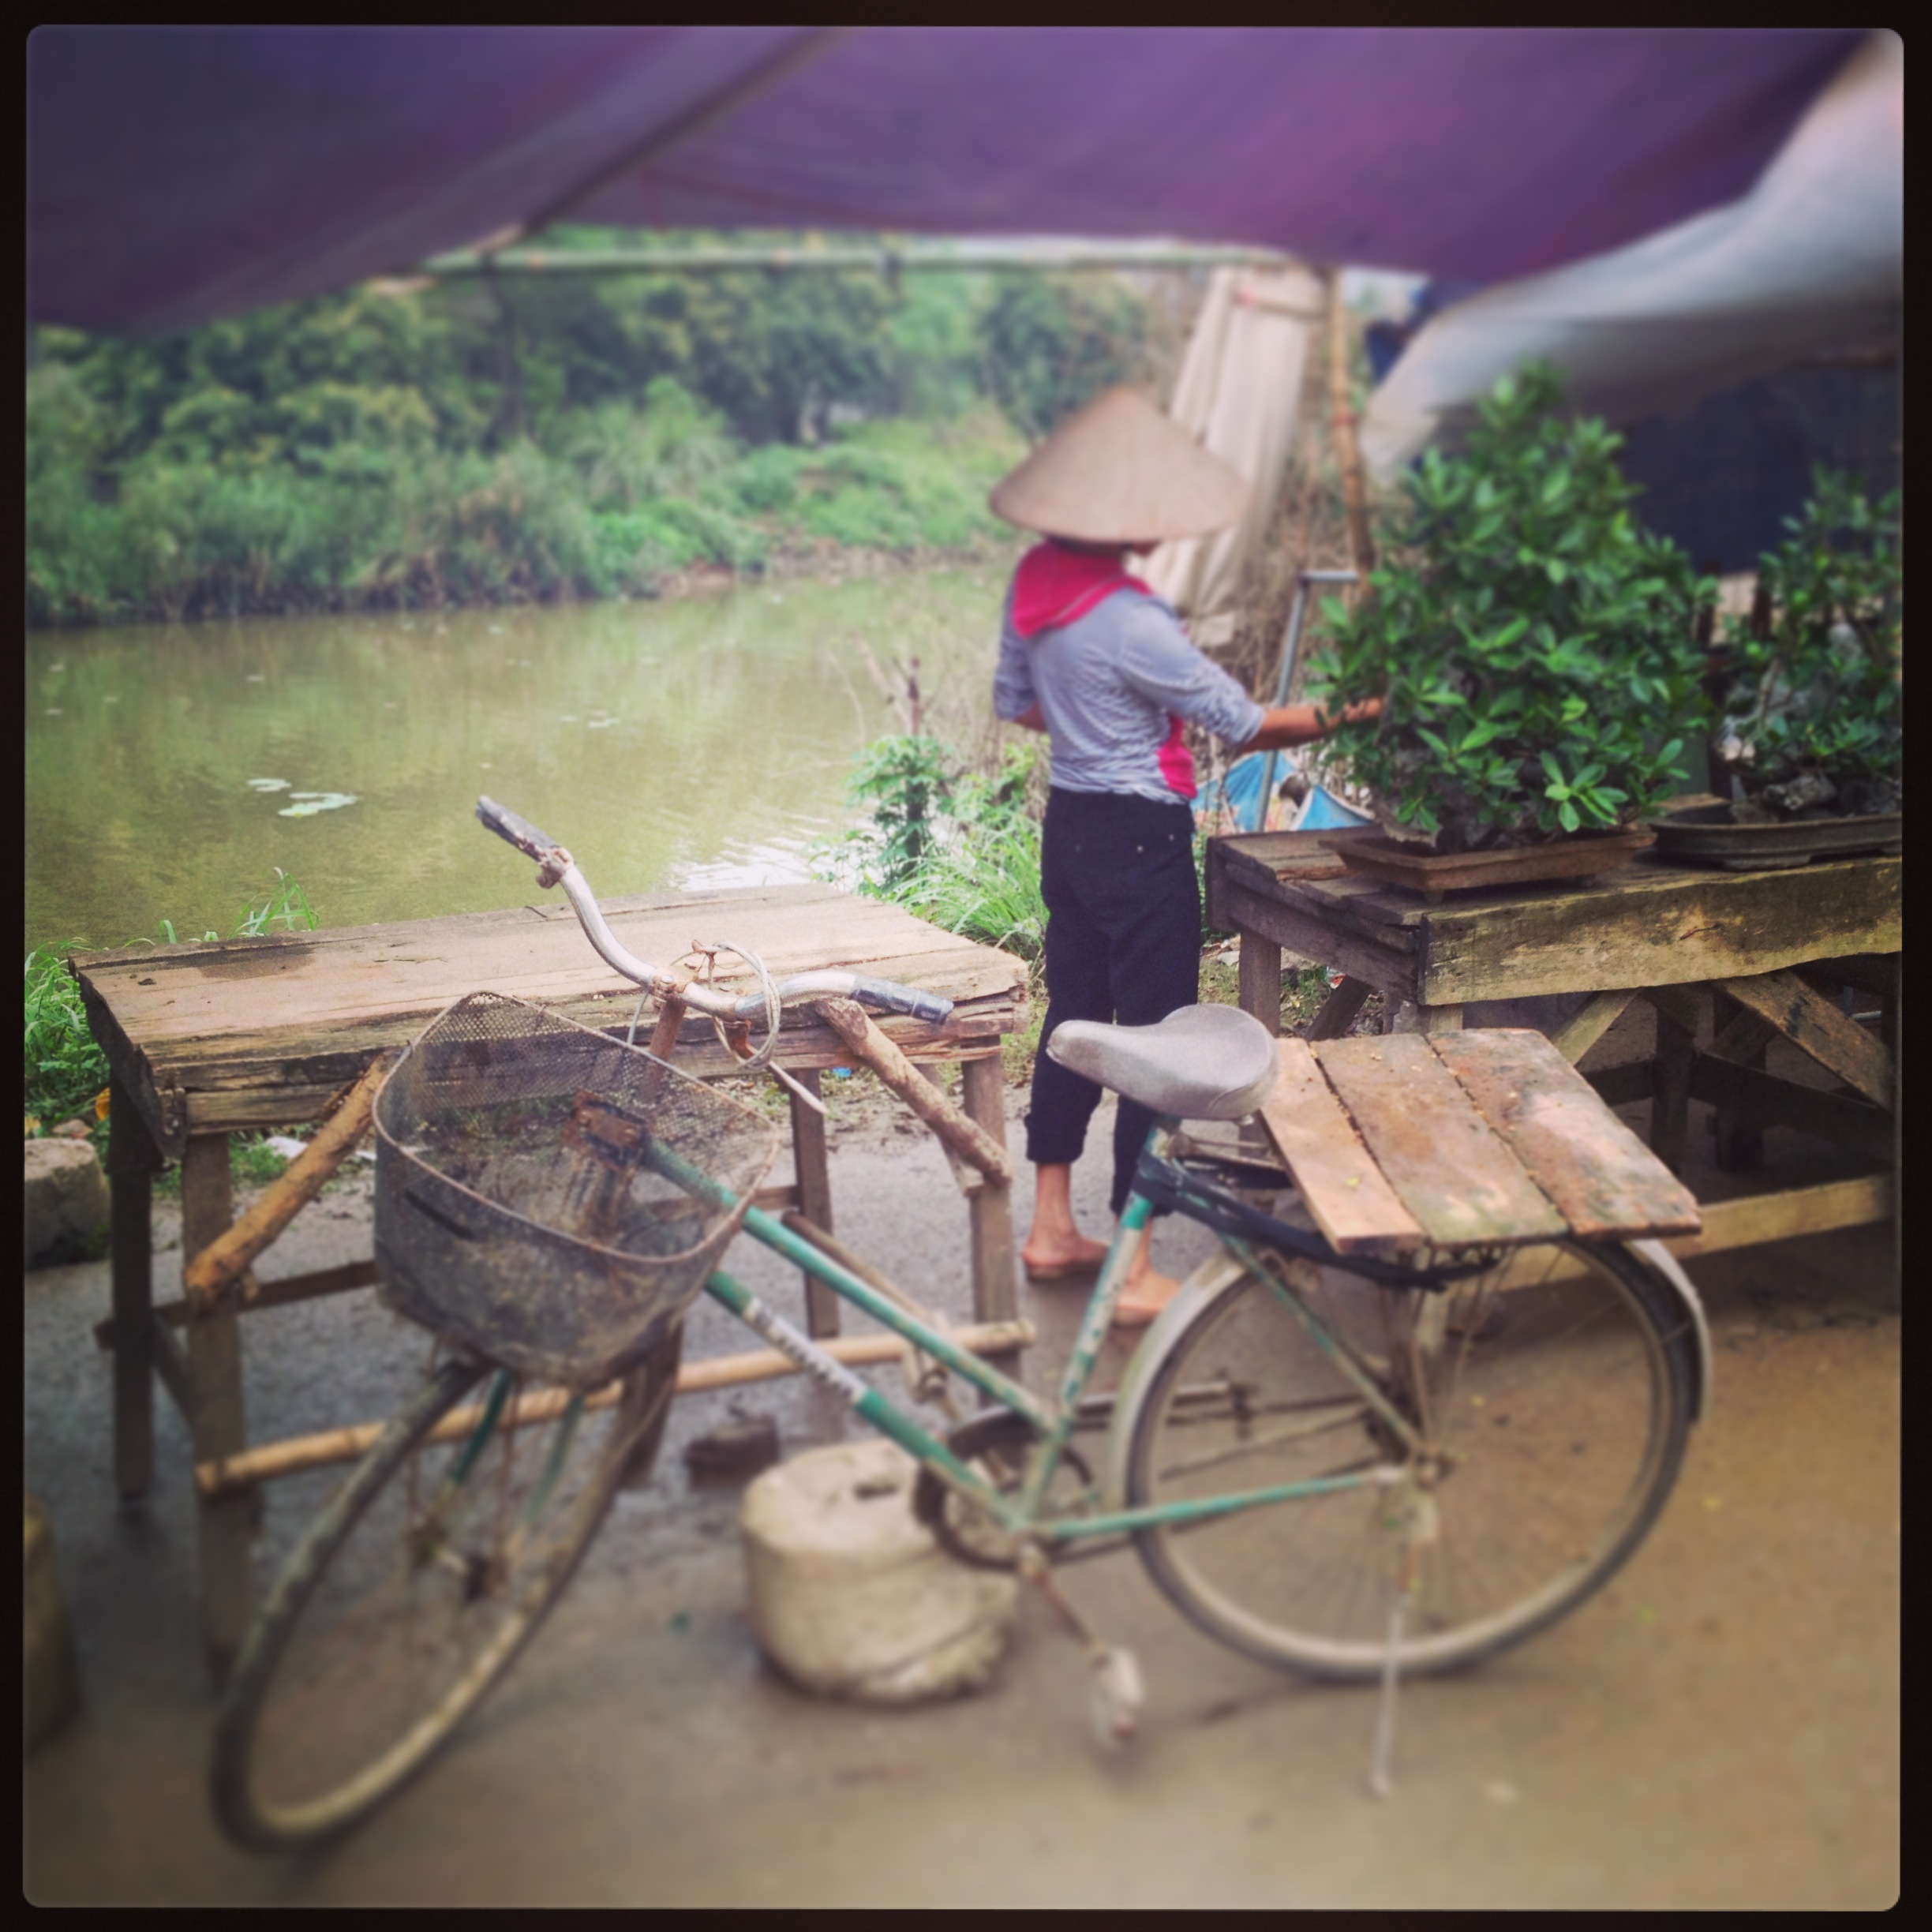 Annick en voyage de familiarisation au Vietnam - Hue